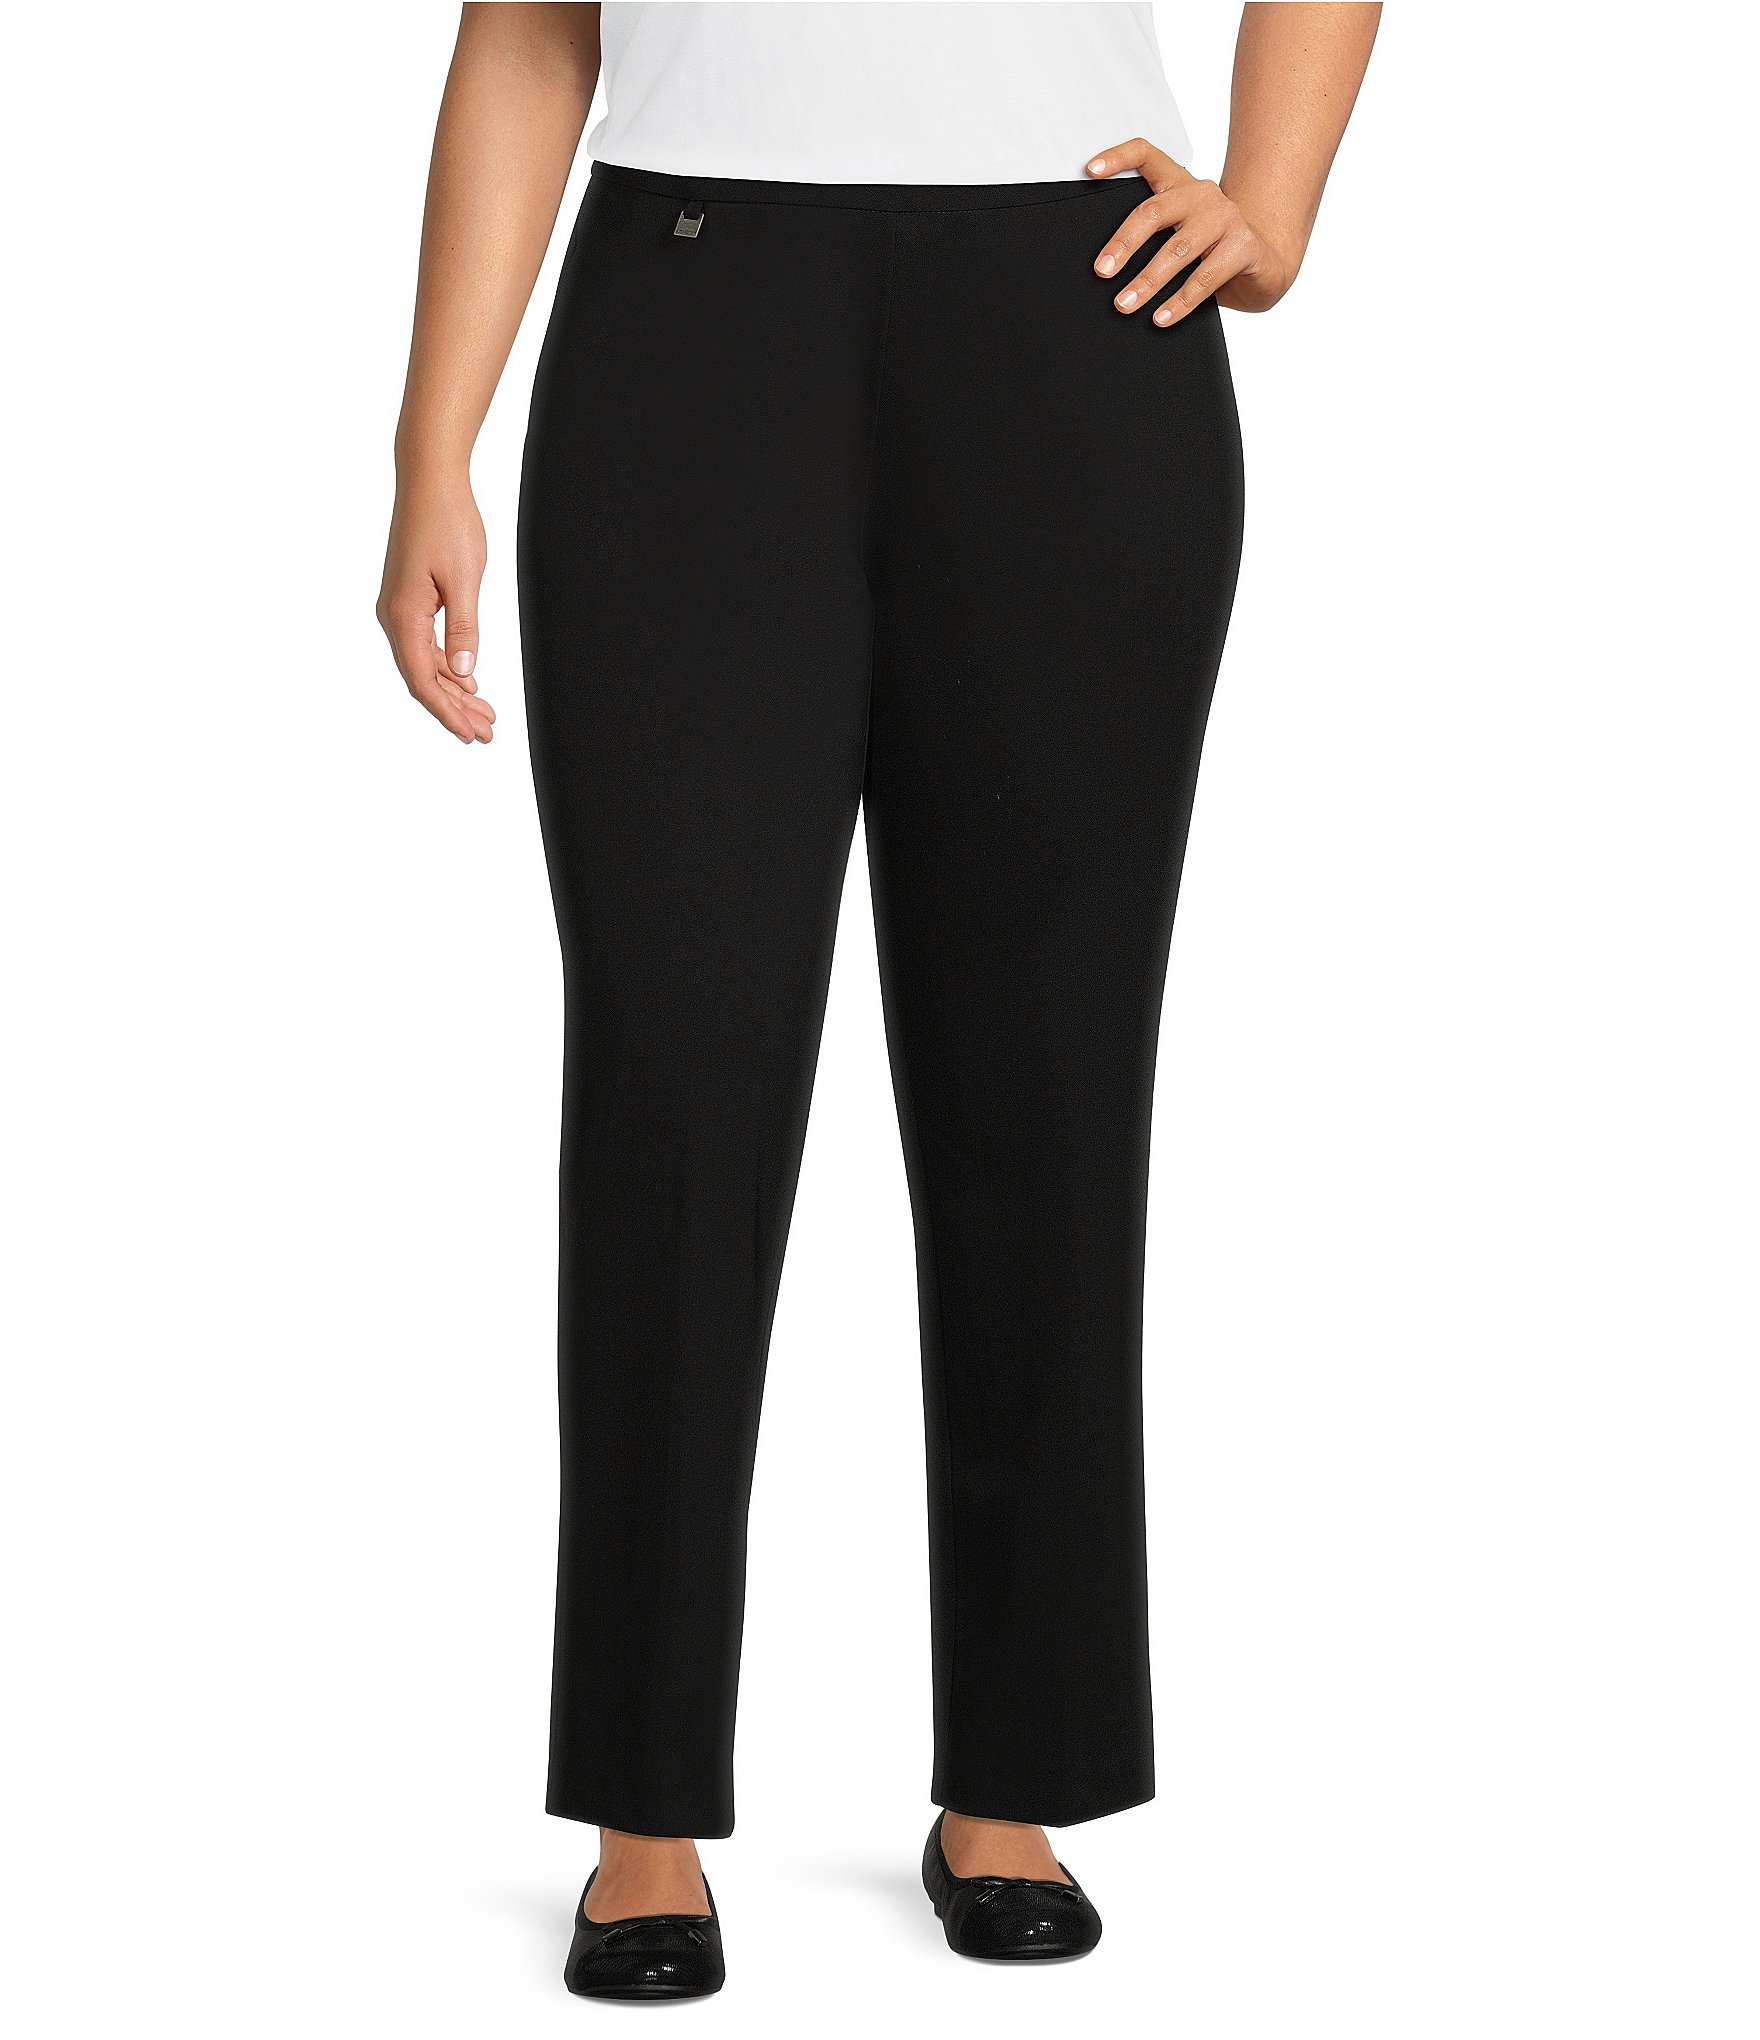 Women's Fleece Lined Pants Mix Color One Dozen Wholesale Size: S-M, L-XL -  Nali Collection, Inc.